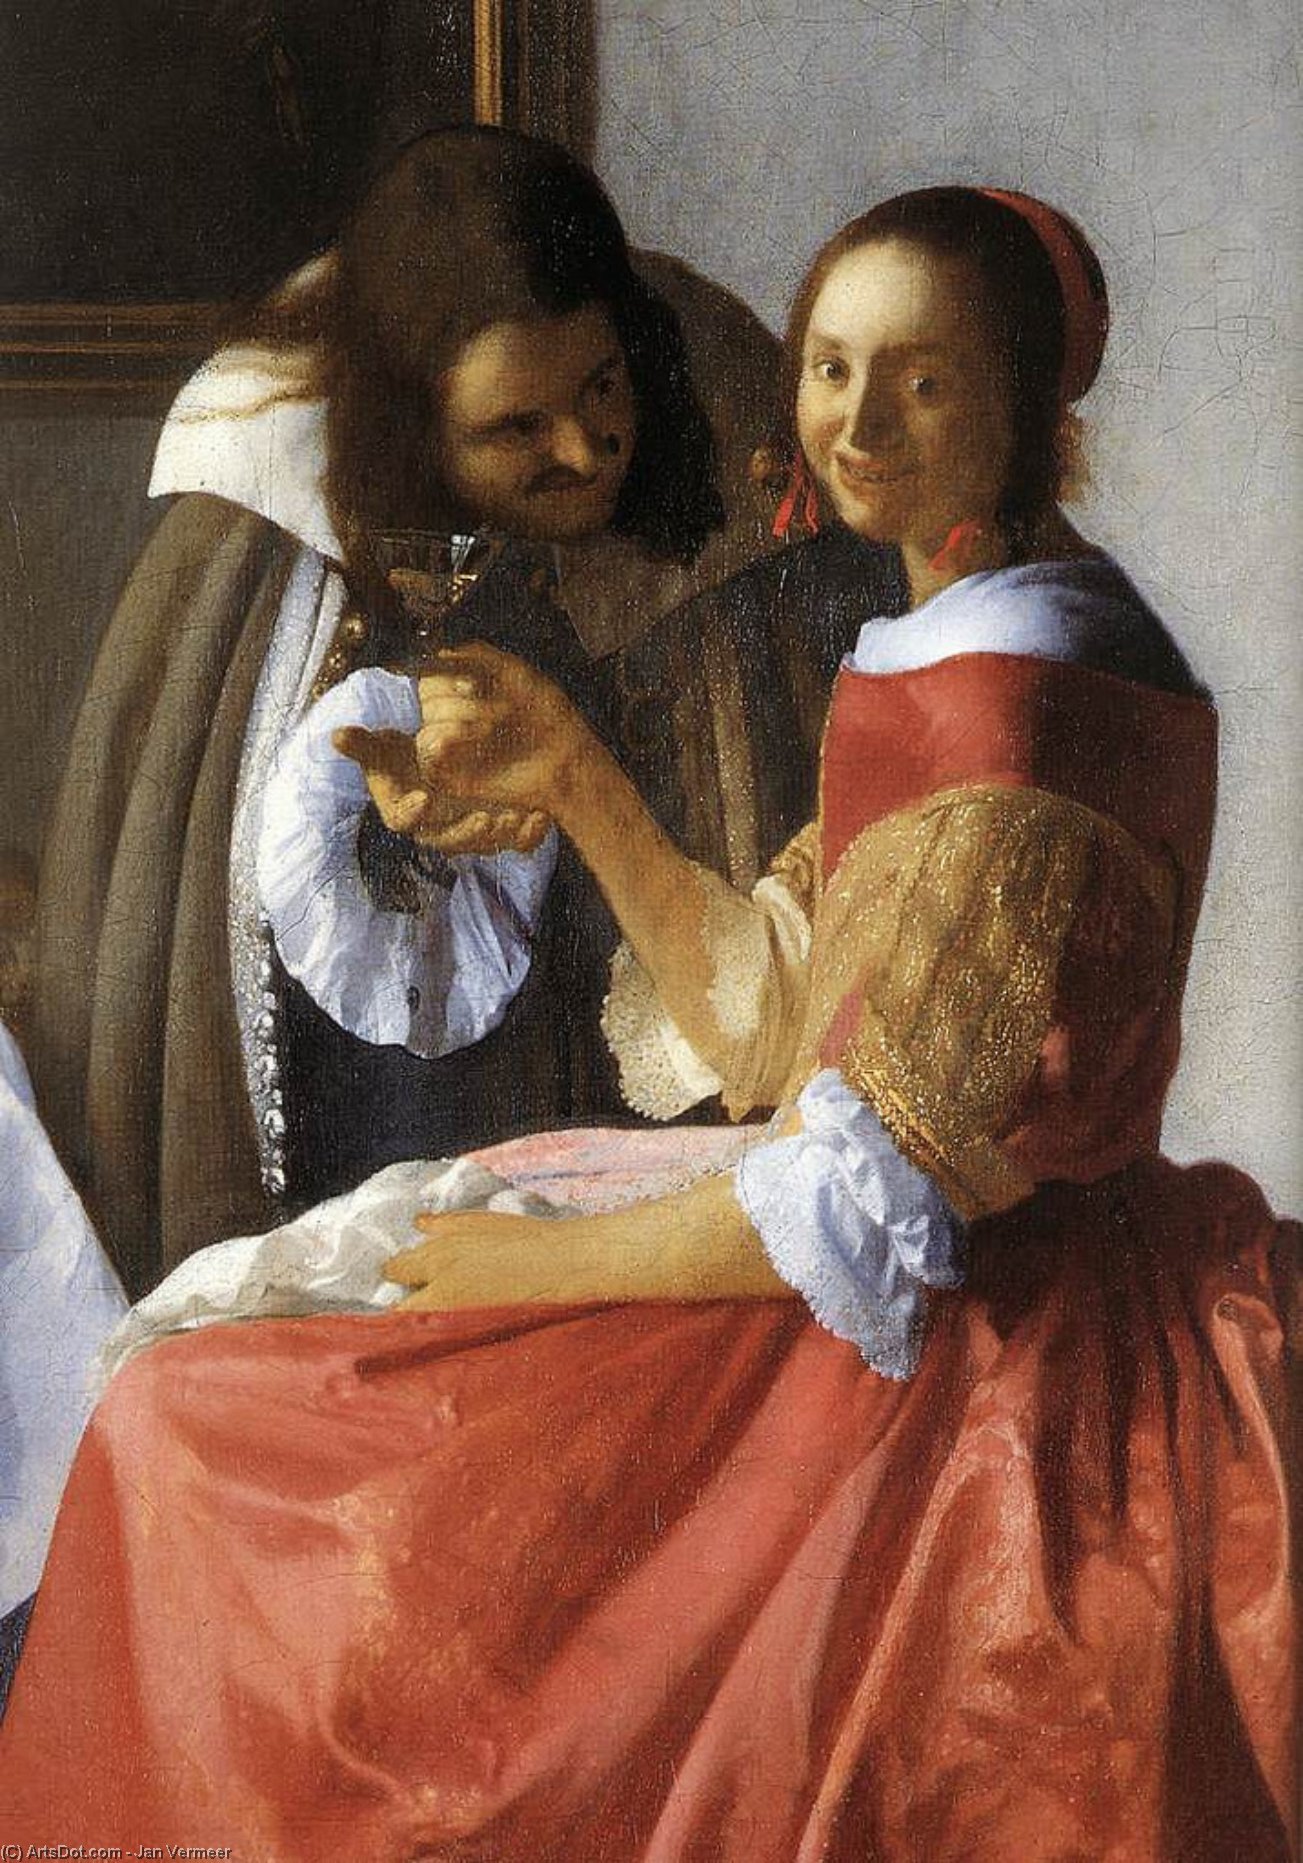 WikiOO.org - Encyclopedia of Fine Arts - Lukisan, Artwork Jan Vermeer - A Lady and Two Gentlemen (detail)